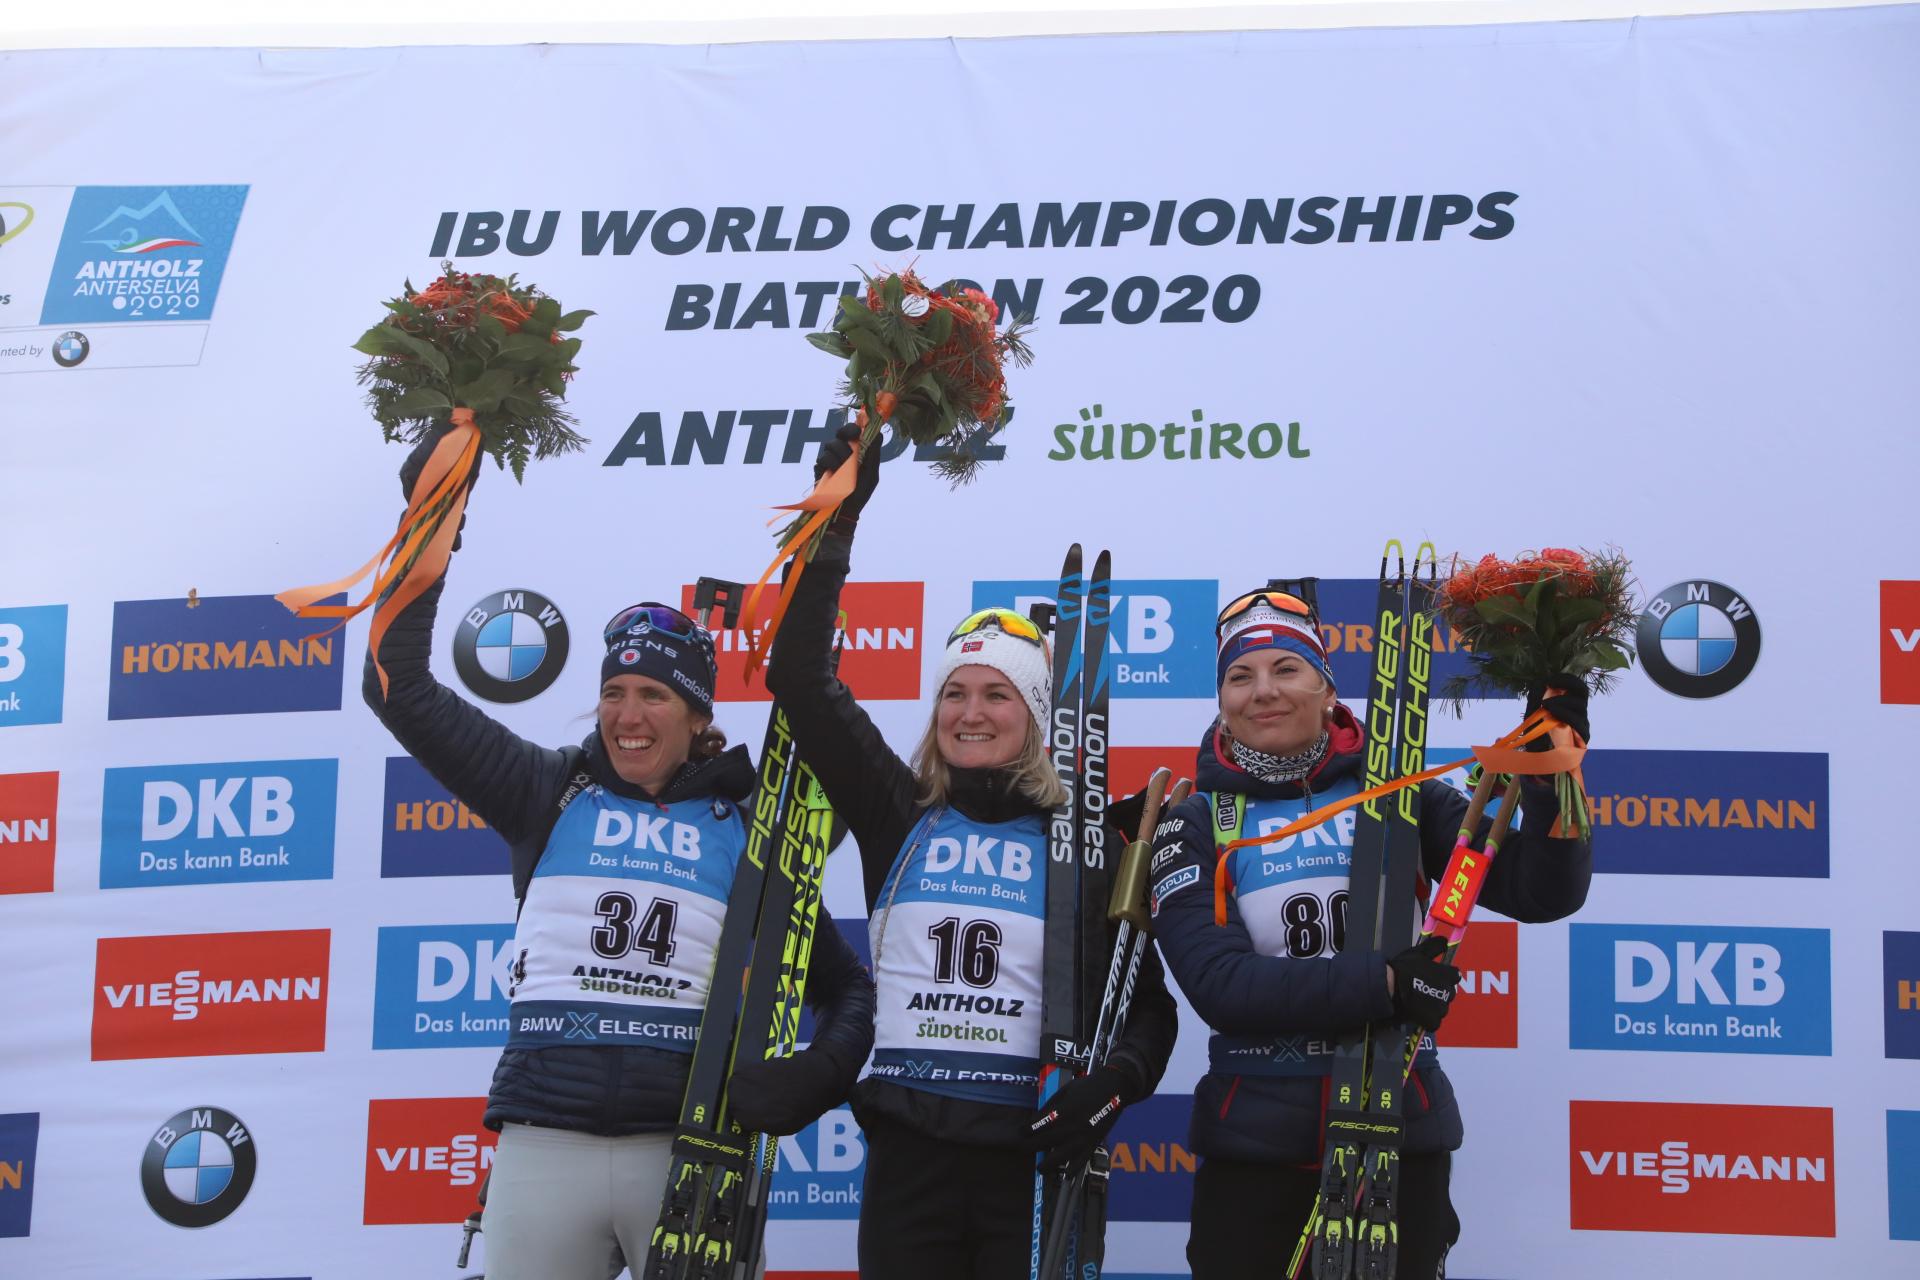 Bild: Biathlon Weltmeisterschaft Antholz der Frauen - Bilder: Joachim Hahne - johapress